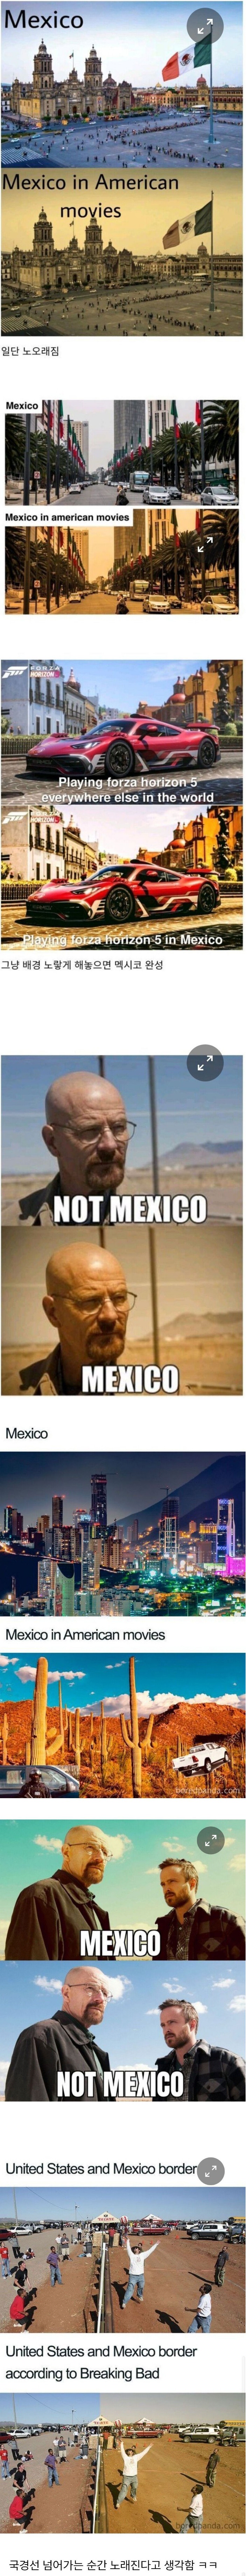 19 미국인들이 생각하는 멕시코 특징.jpg